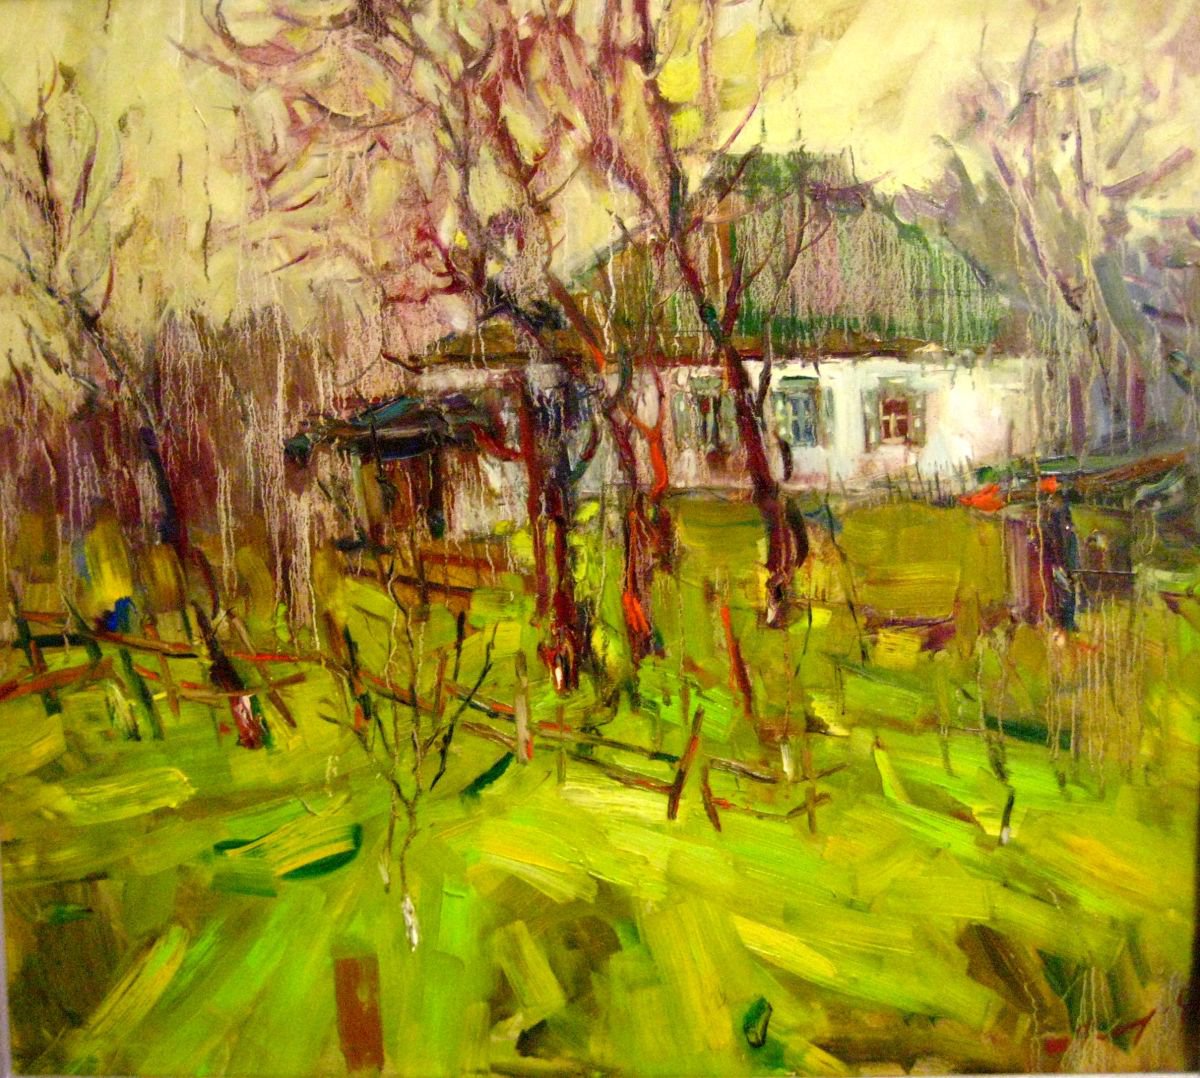 Yellow day by Yuliia Pastukhova